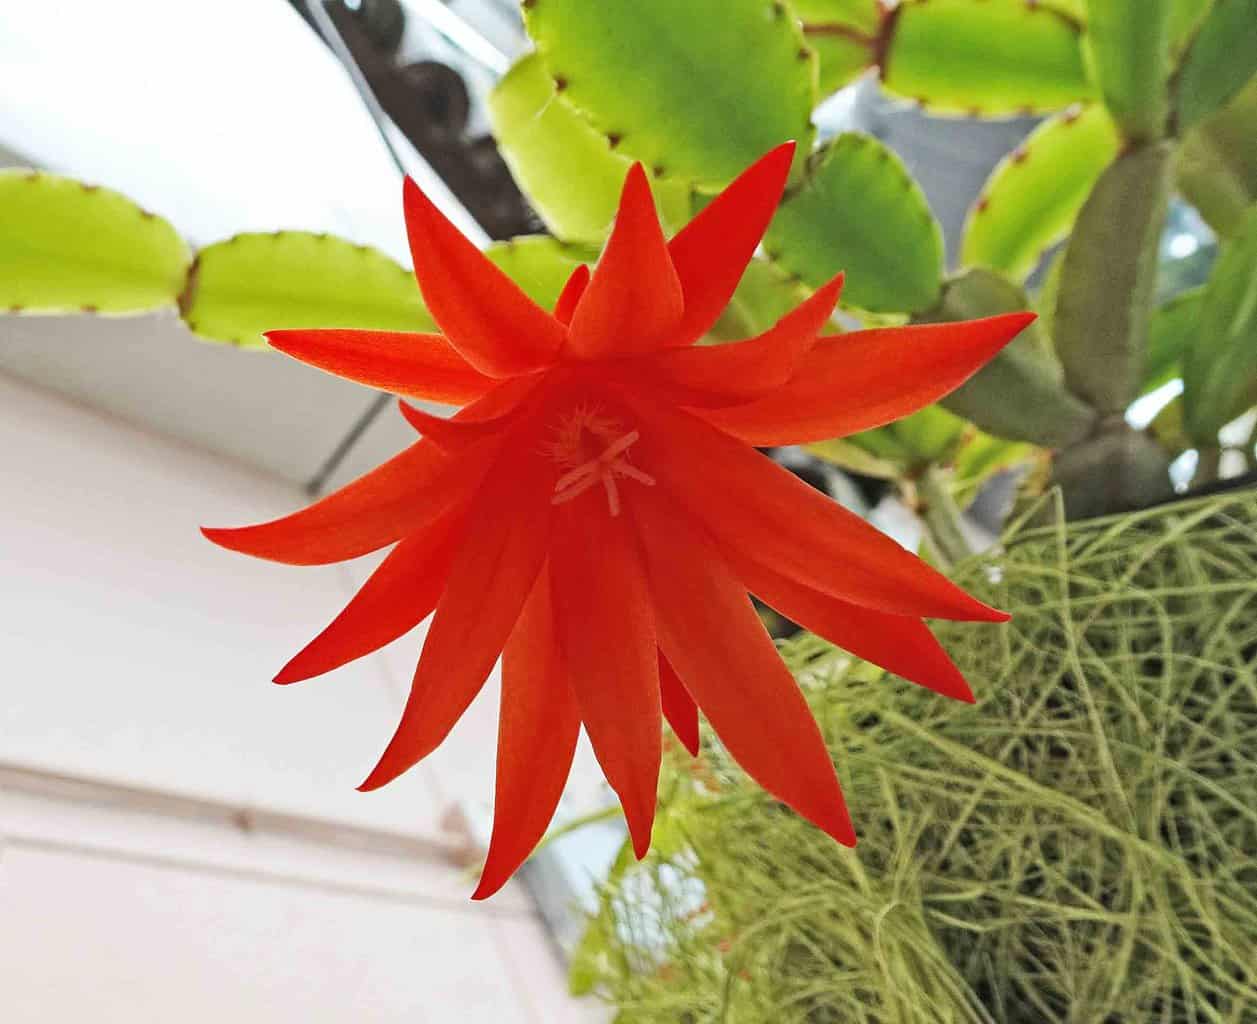 easter cactus flowering